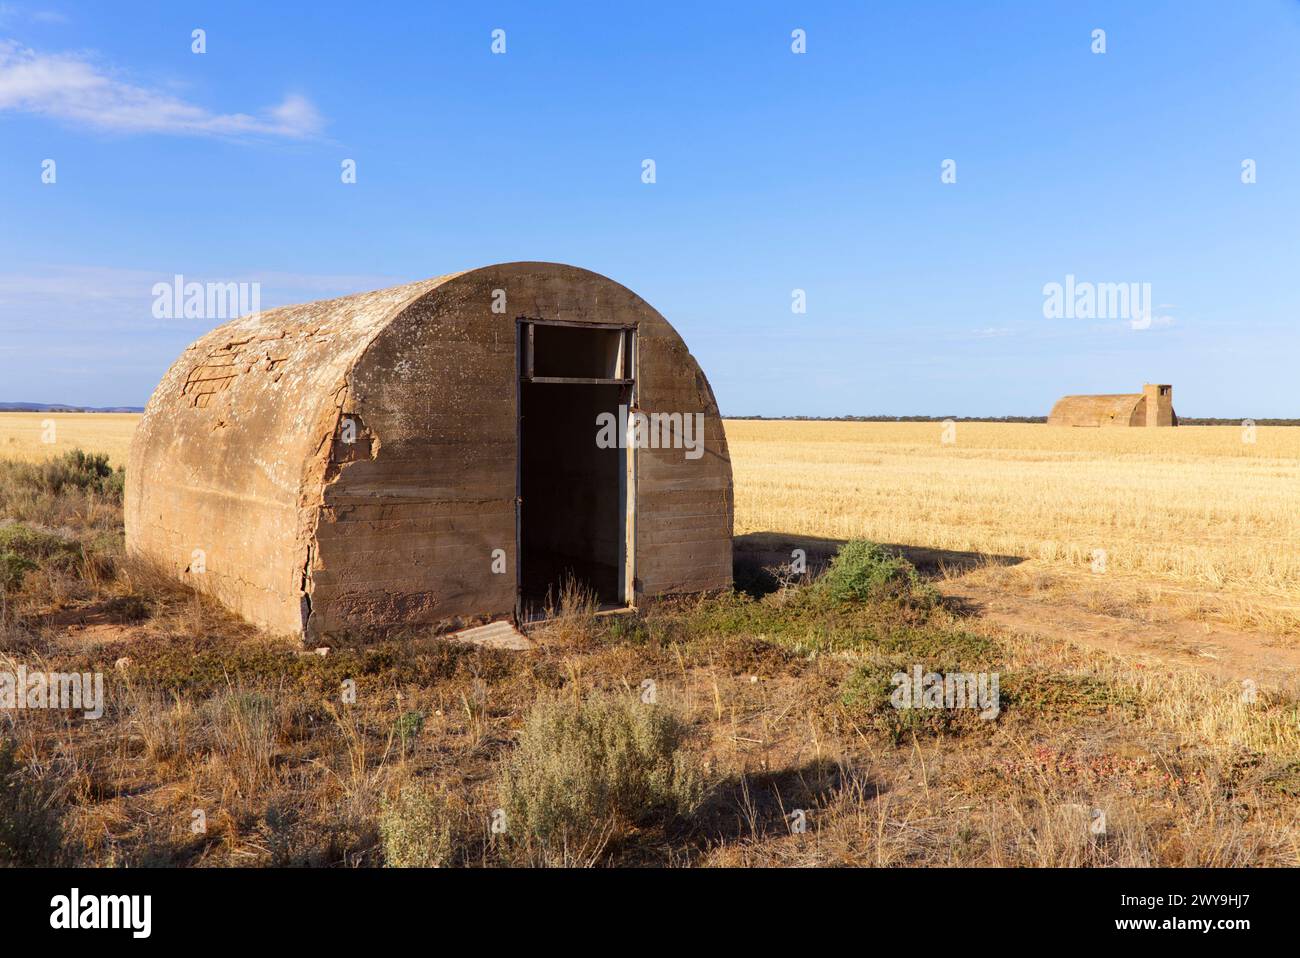 L'Igloo construisit des bunkers de la seconde Guerre mondiale dans un champ de blé près de la péninsule de Port Gibbon Eyre en Australie méridionale Banque D'Images